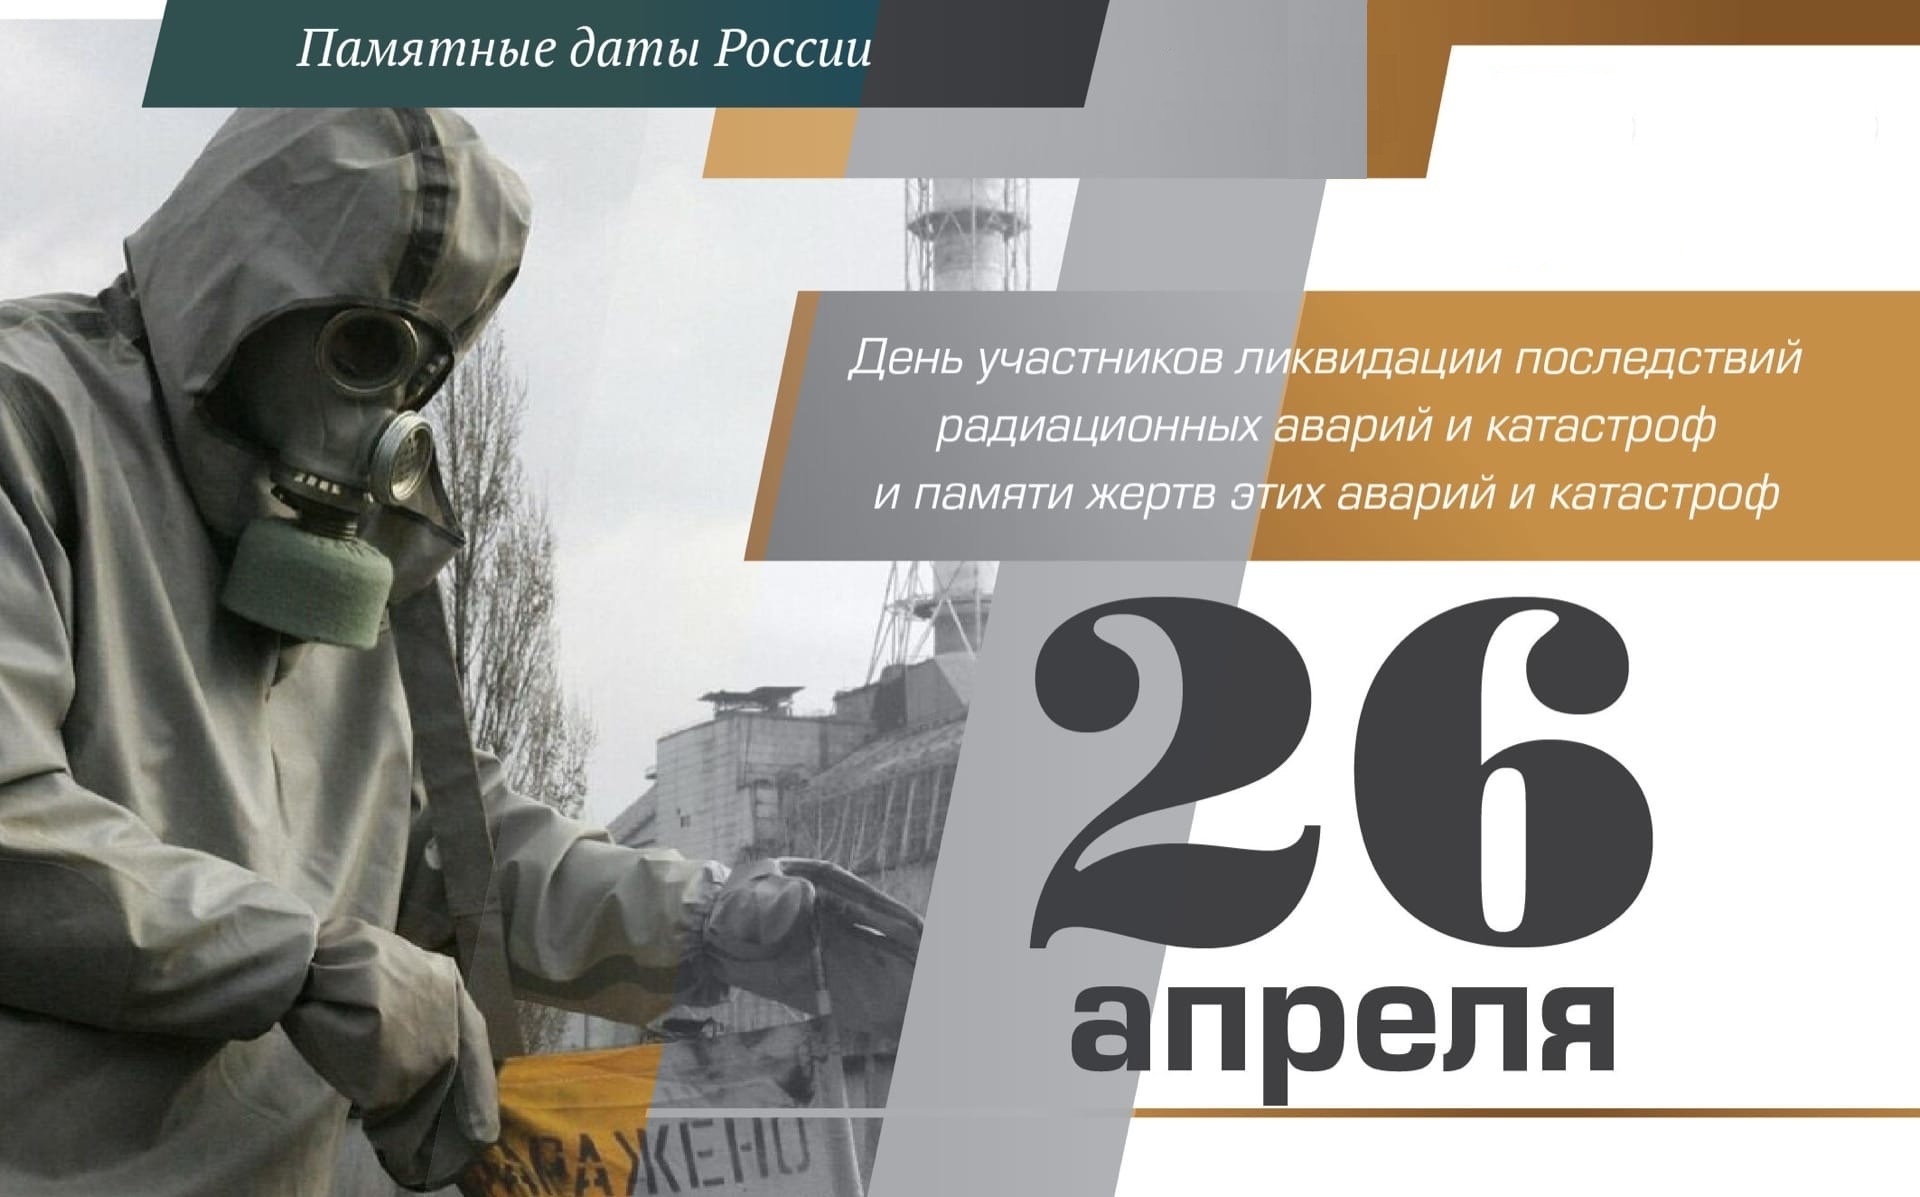 «Чернобыль — это память на много веков».